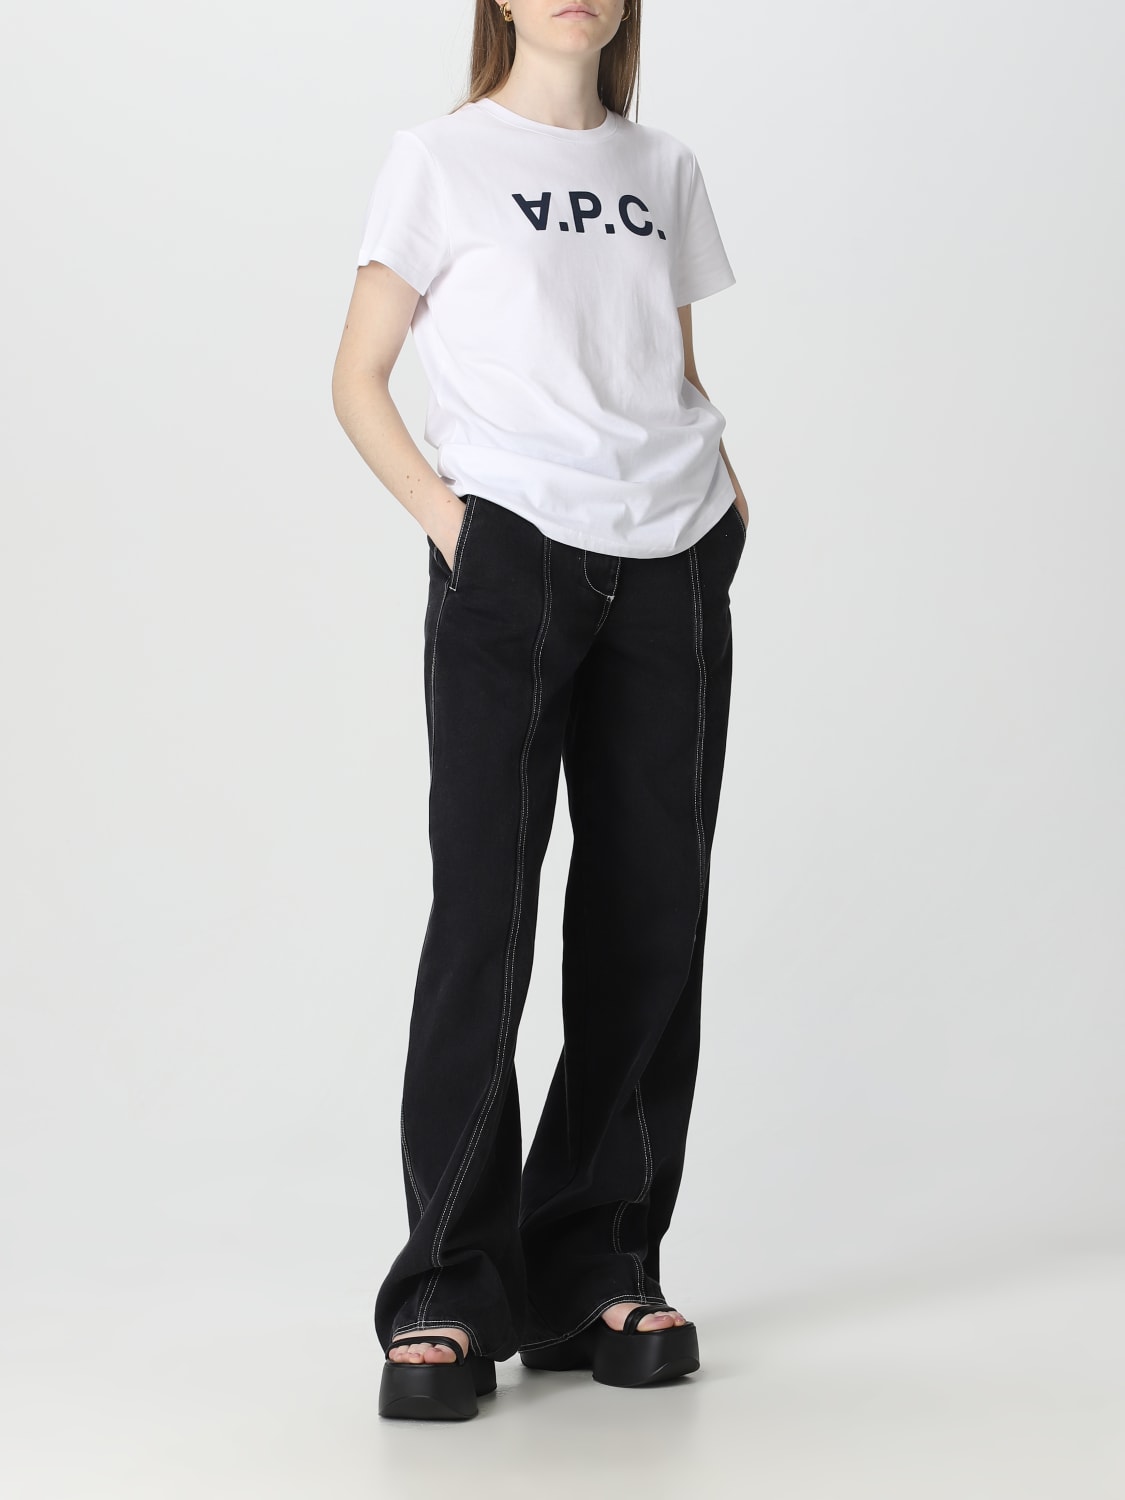 A.P.C.: t-shirt for woman - White | A.p.c. t-shirt COBQXF26588 online ...